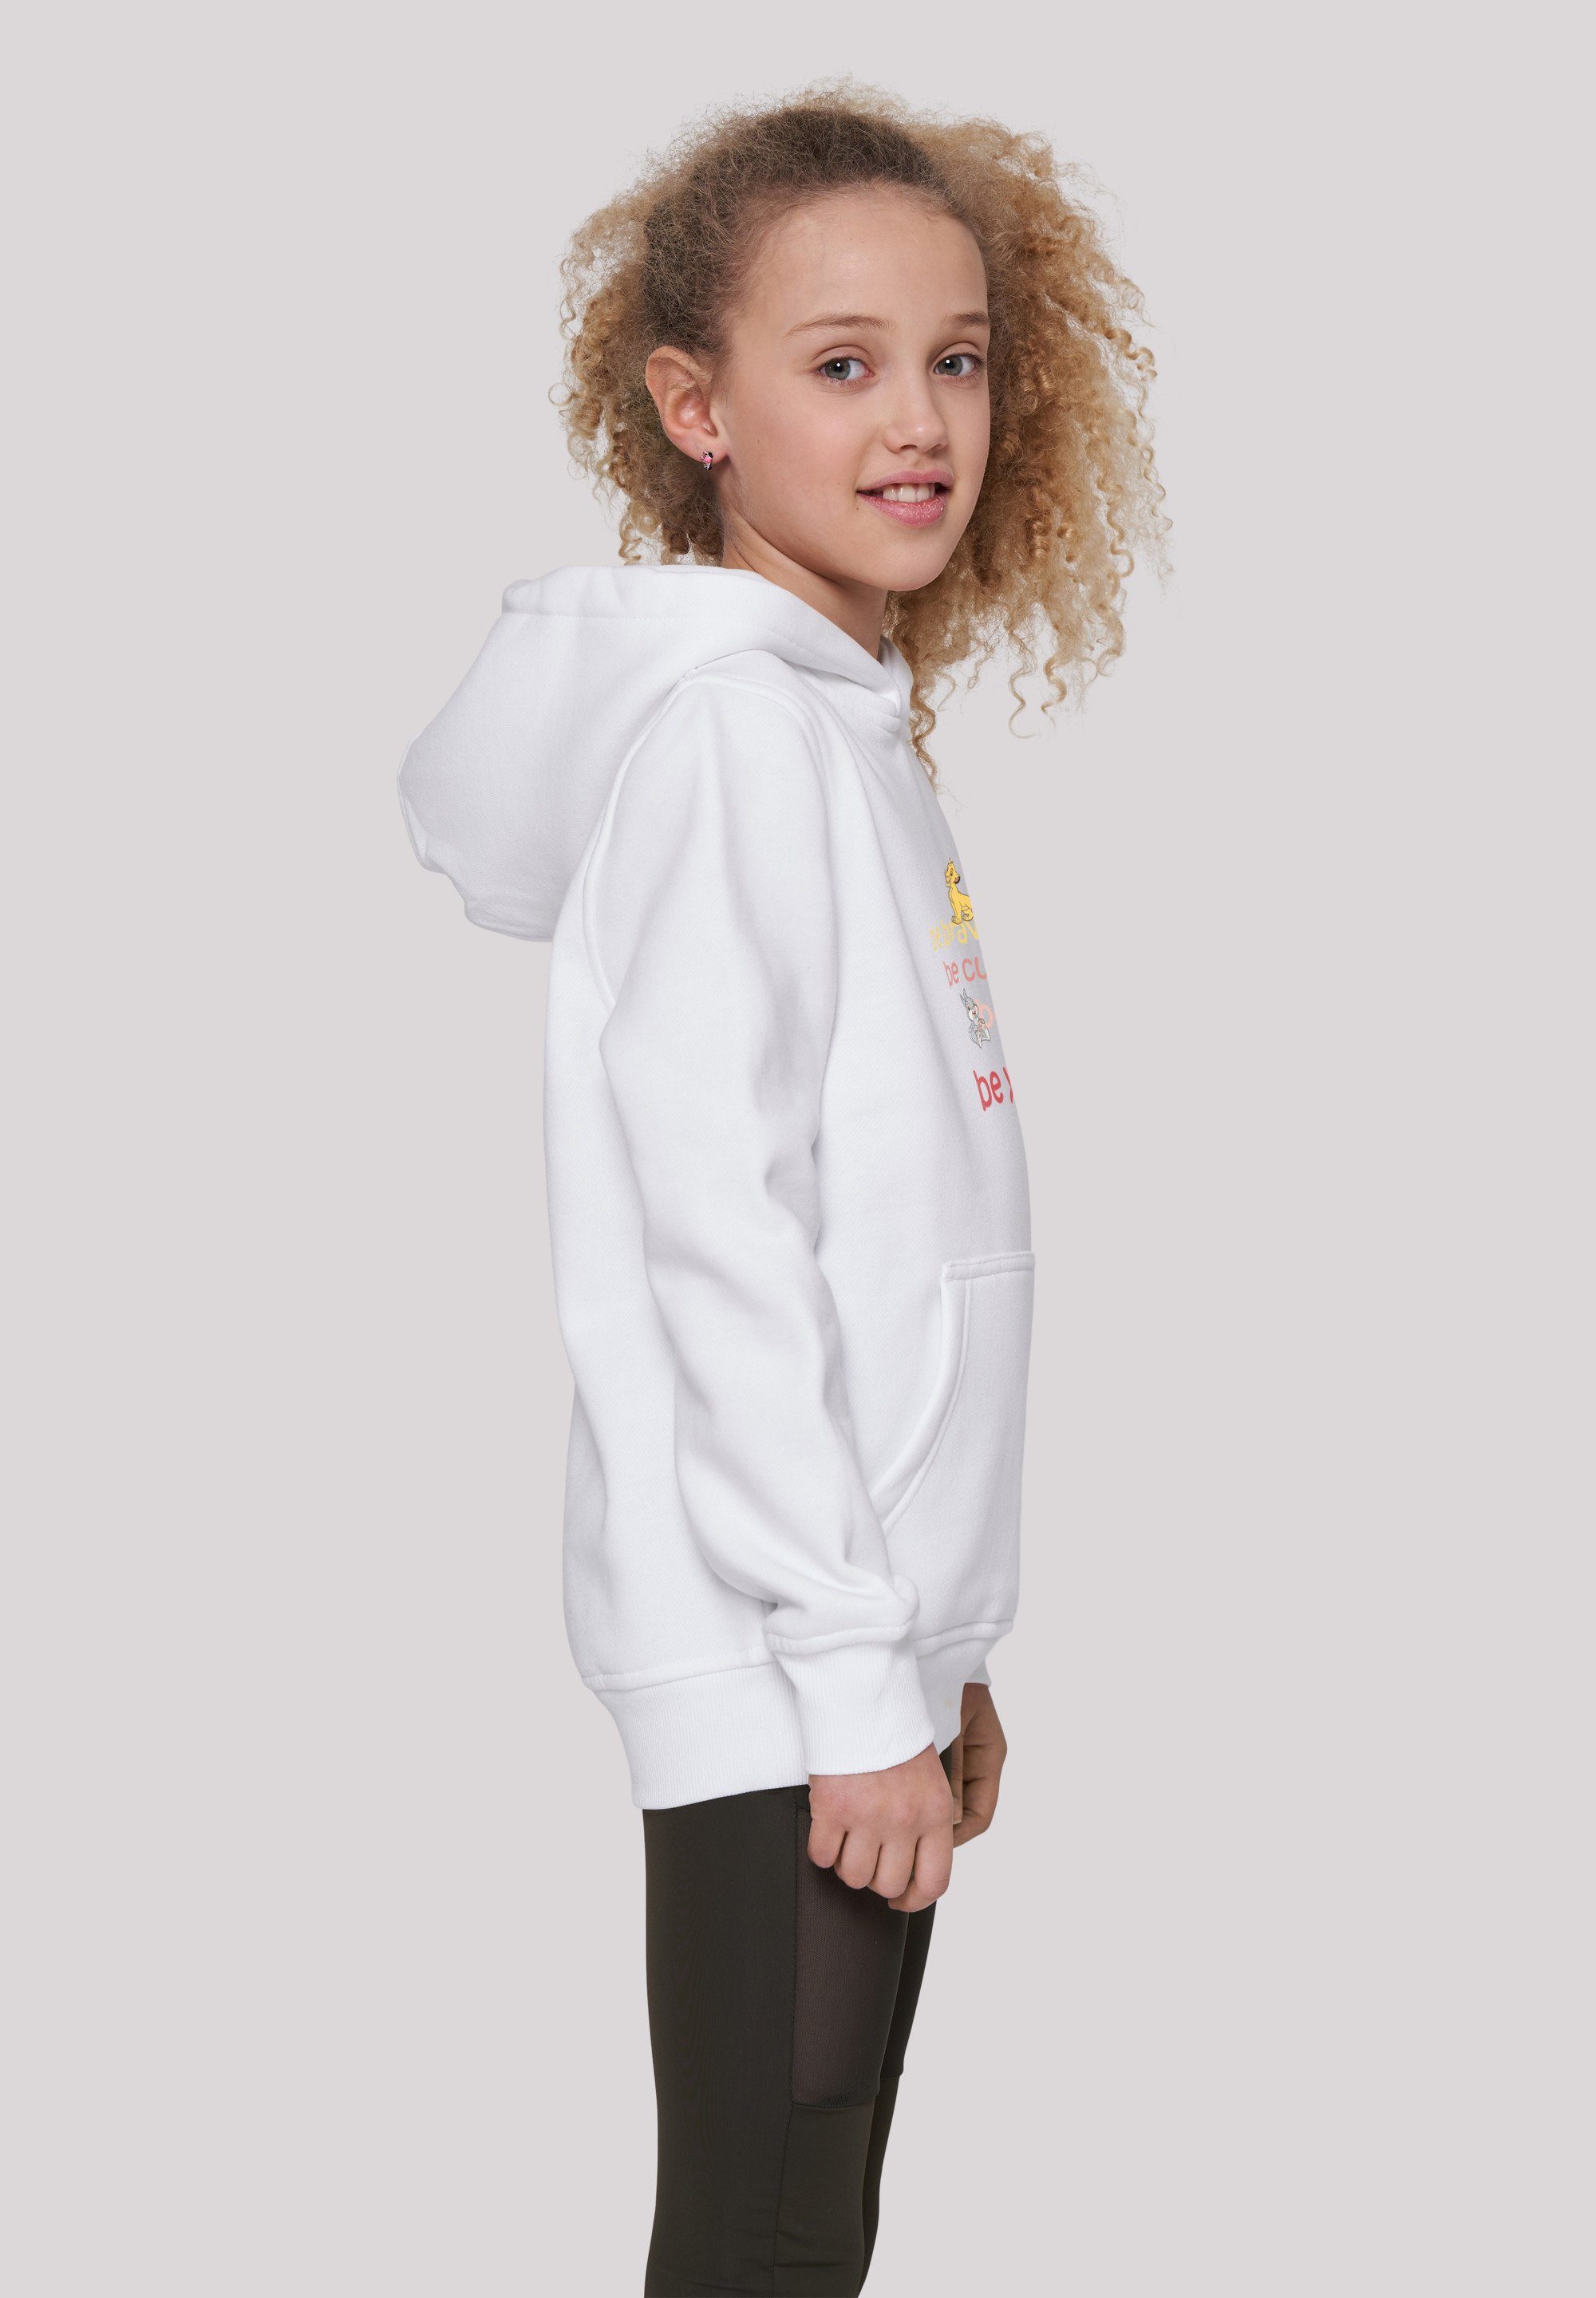 Sweatshirt F4NT4STIC weiß Be Unisex Brave Disney Merch,Jungen,Mädchen,Bedruckt Curious Be Kinder,Premium